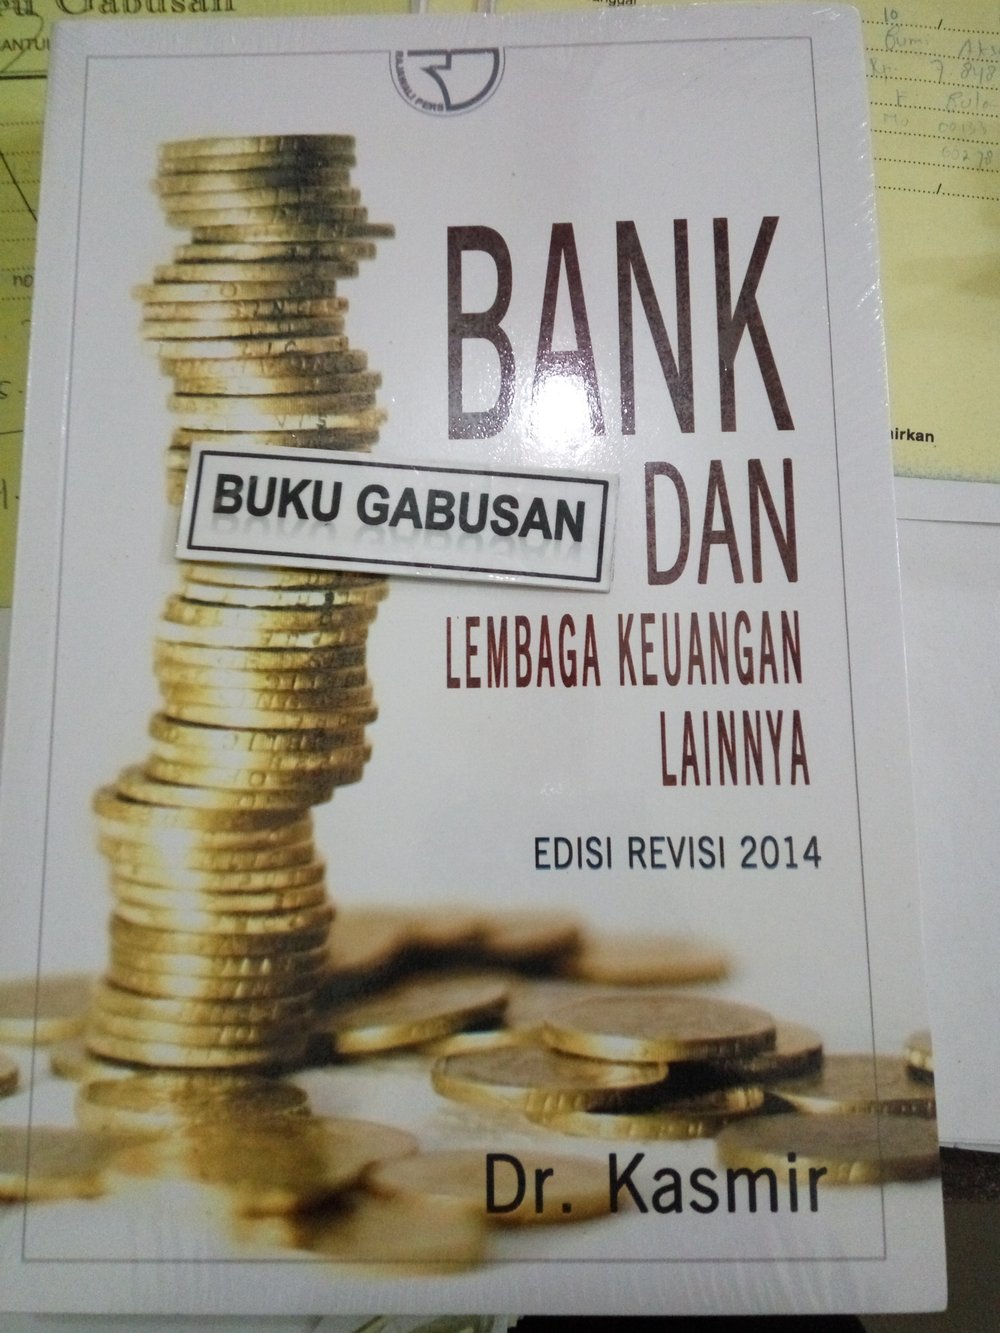 download buku bank dan lembaga keuangan lainnya kasmir pdf